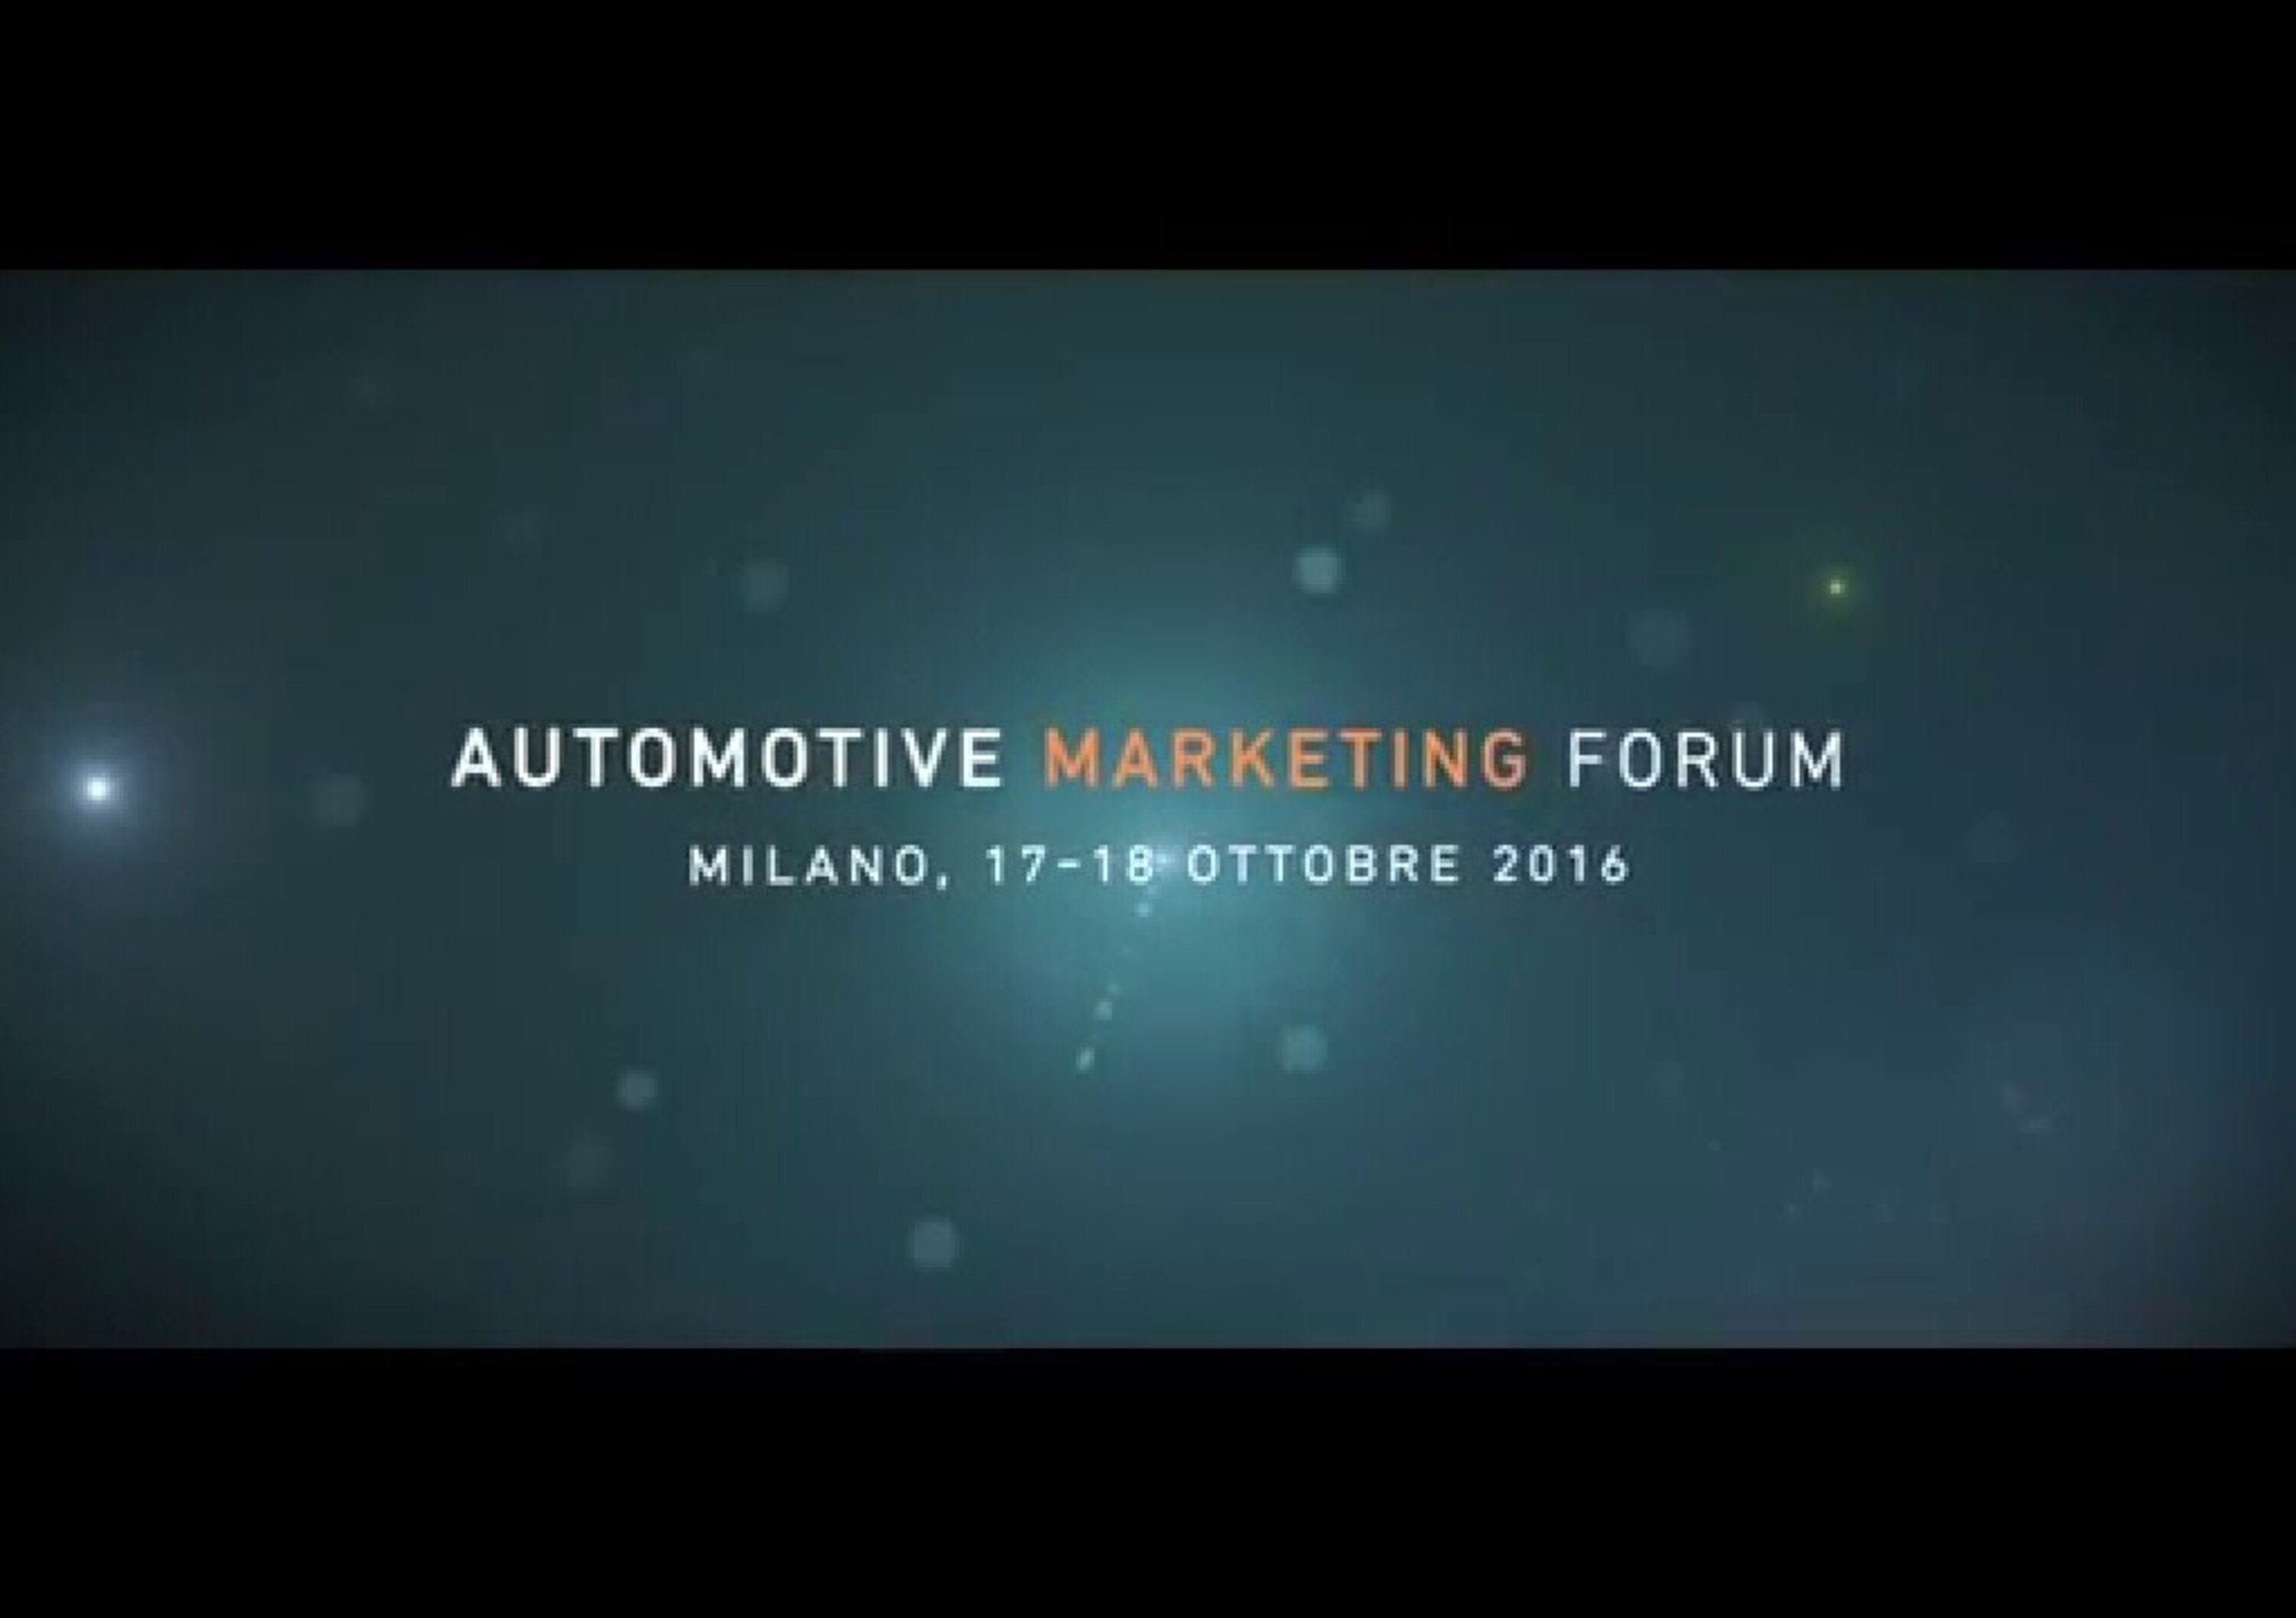 Automotive Marketing Forum il 17-18 ottobre a Milano